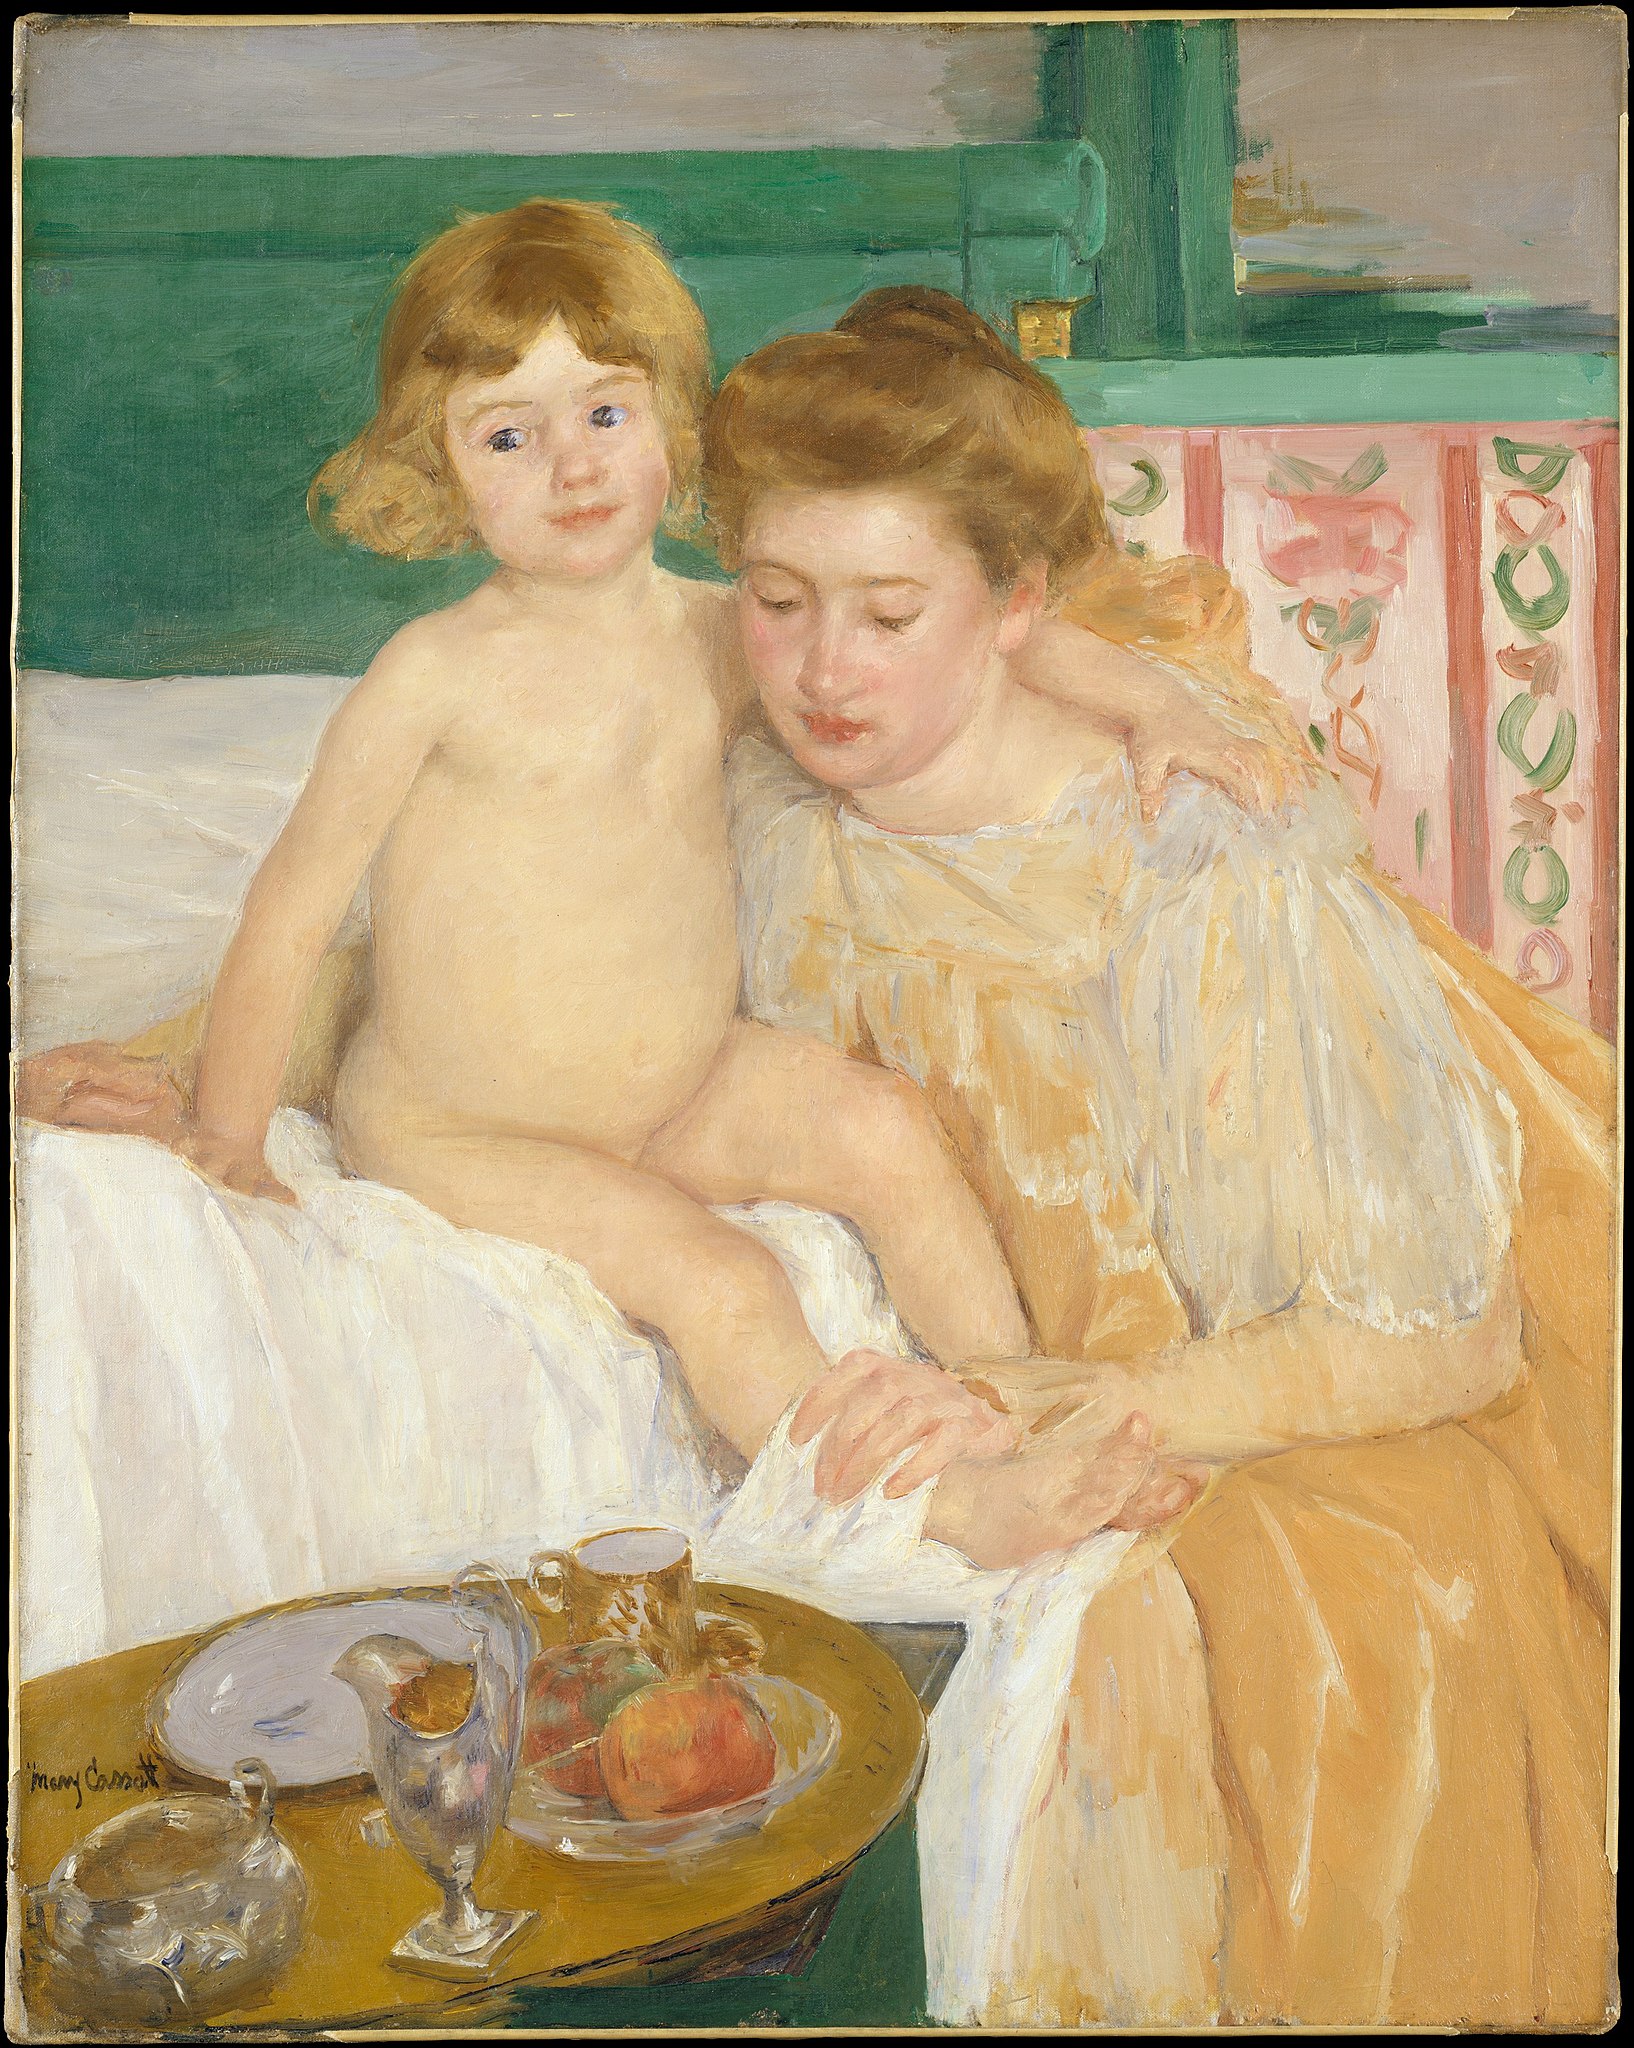 Anya gyermekével (A kicsi épp most ébredt) by Mary Cassatt - 1899 körül - 92,7 x 73,7 cm 